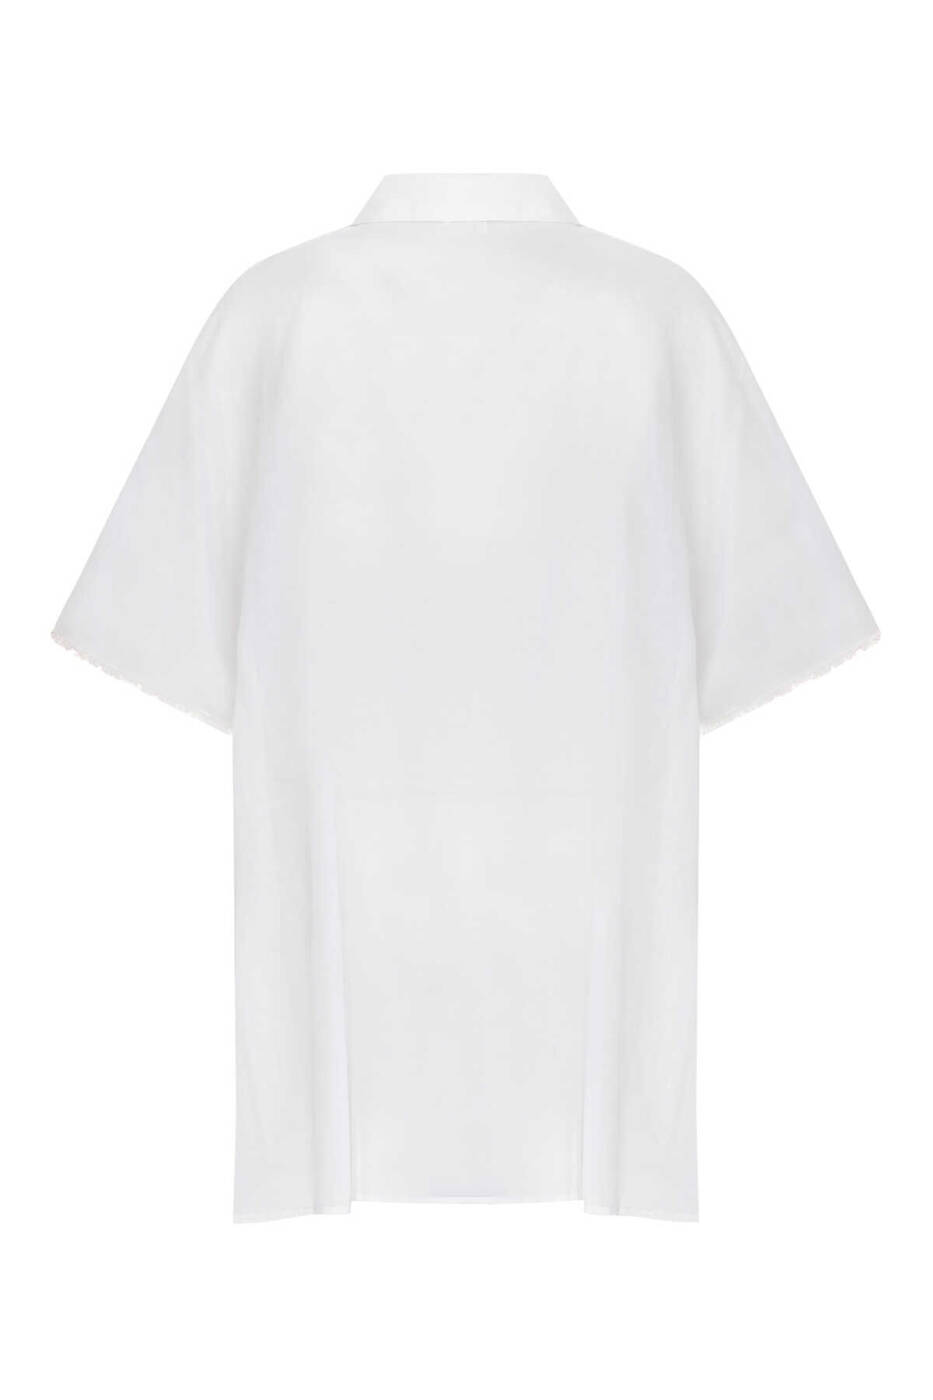 Kadın Gömlek Elbise Beyaz - 5